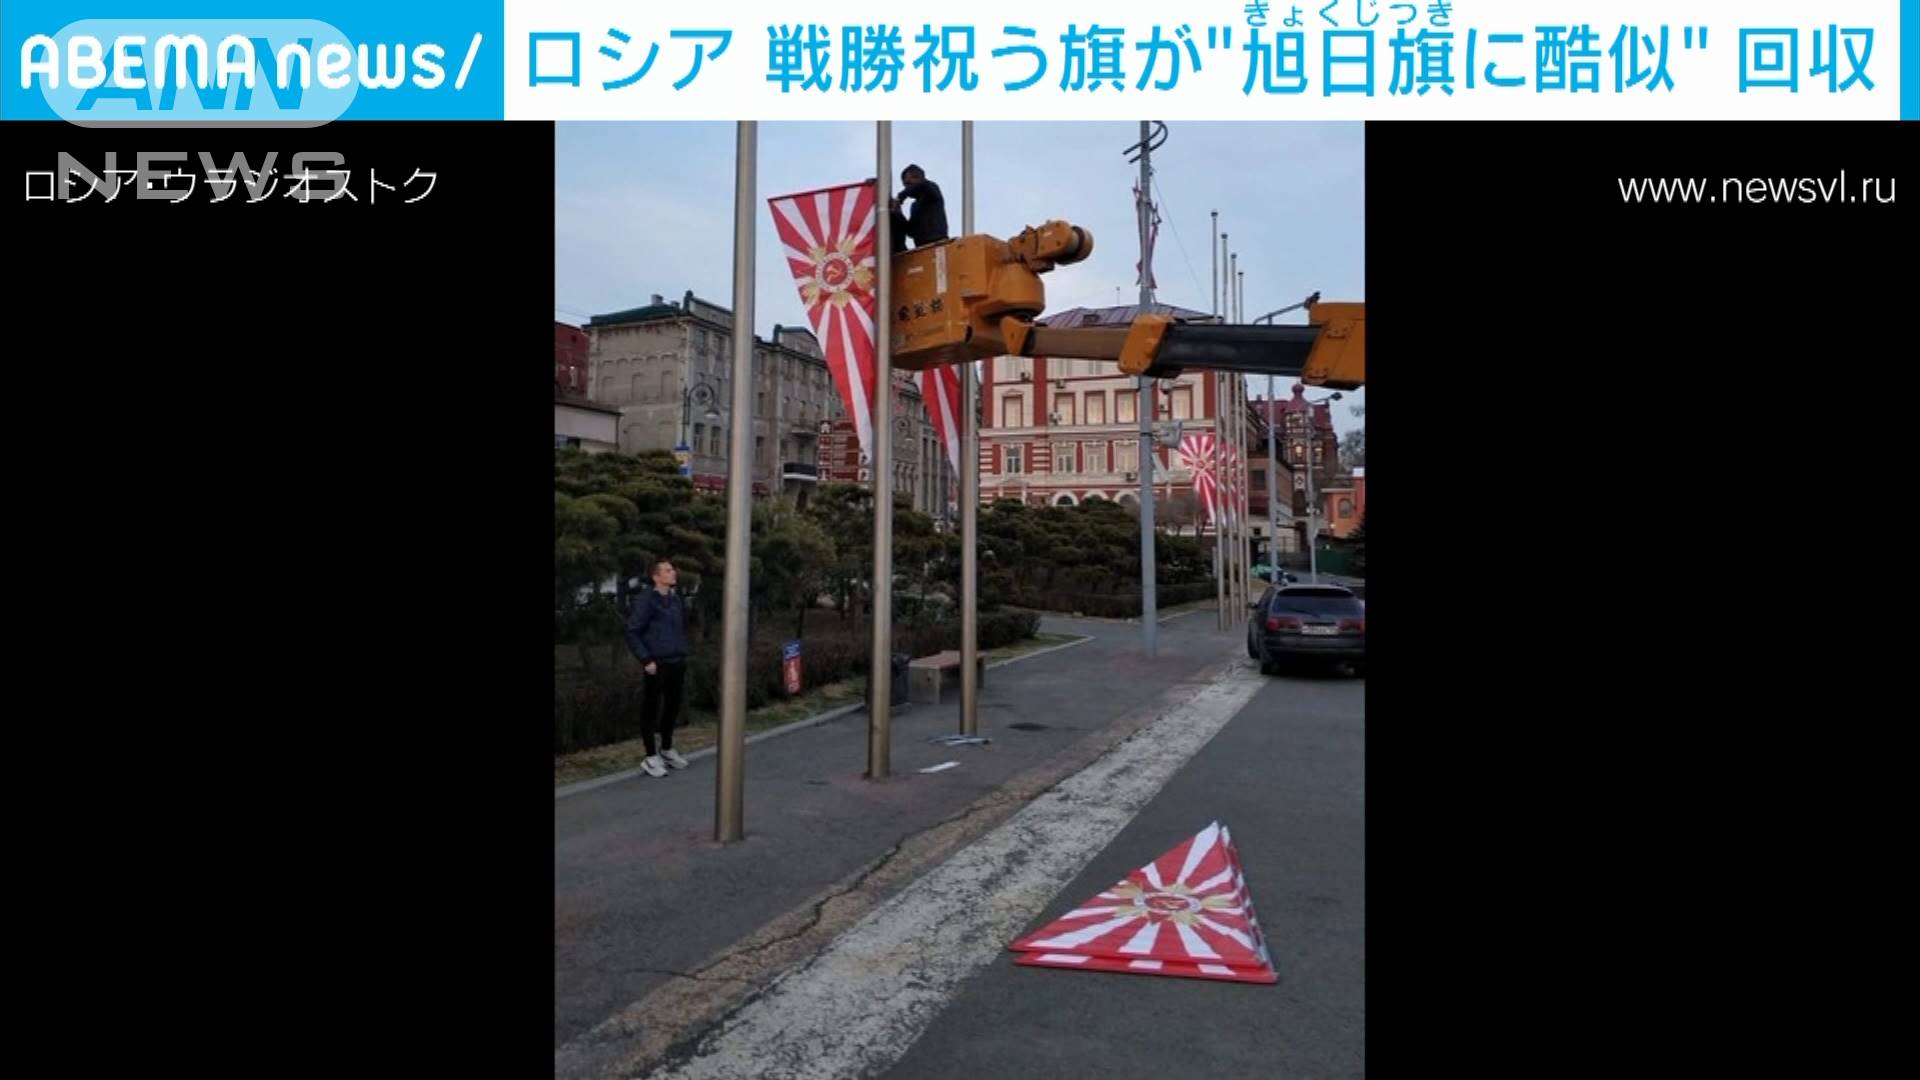 ロシア 対独戦勝祝う旗が 旭日旗 に酷似で回収 テレ朝news テレビ朝日のニュースサイト